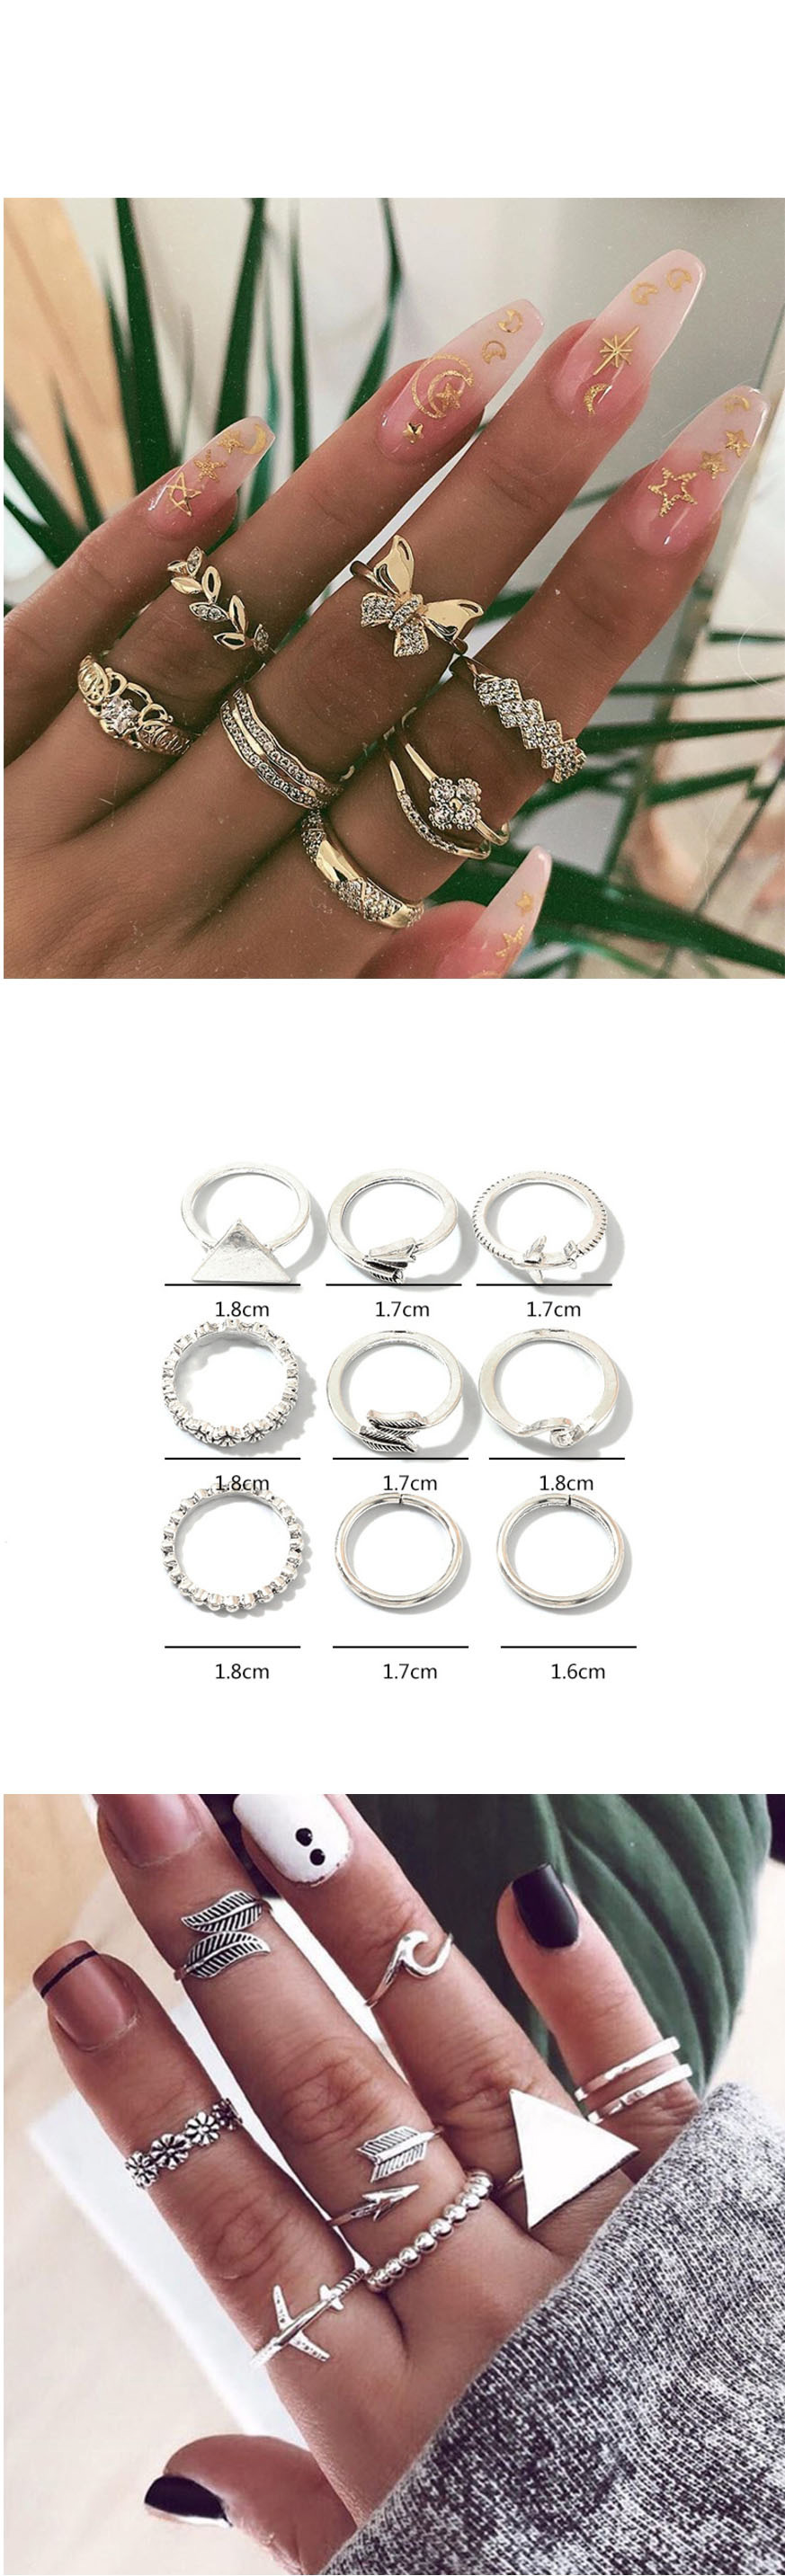 Fashion Golden Eye Cutout Ring Set,Rings Set